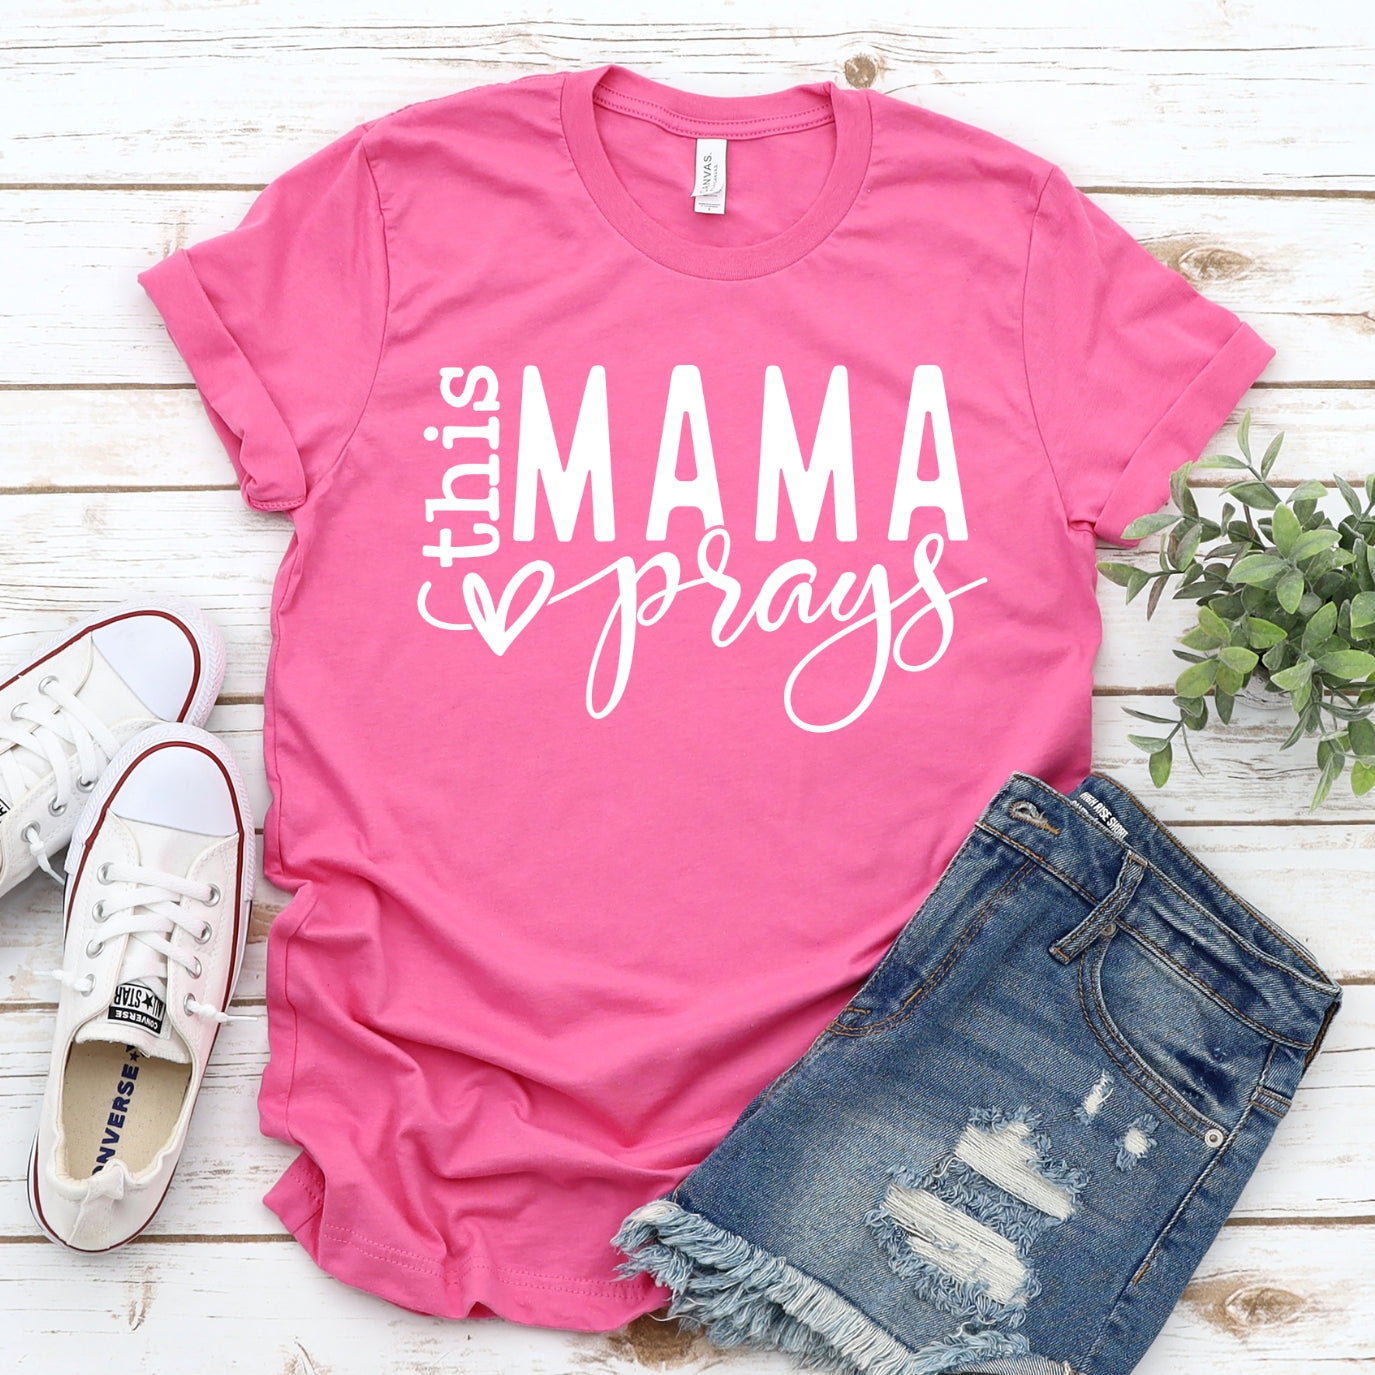 This Mama Prays Women's T-Shirt